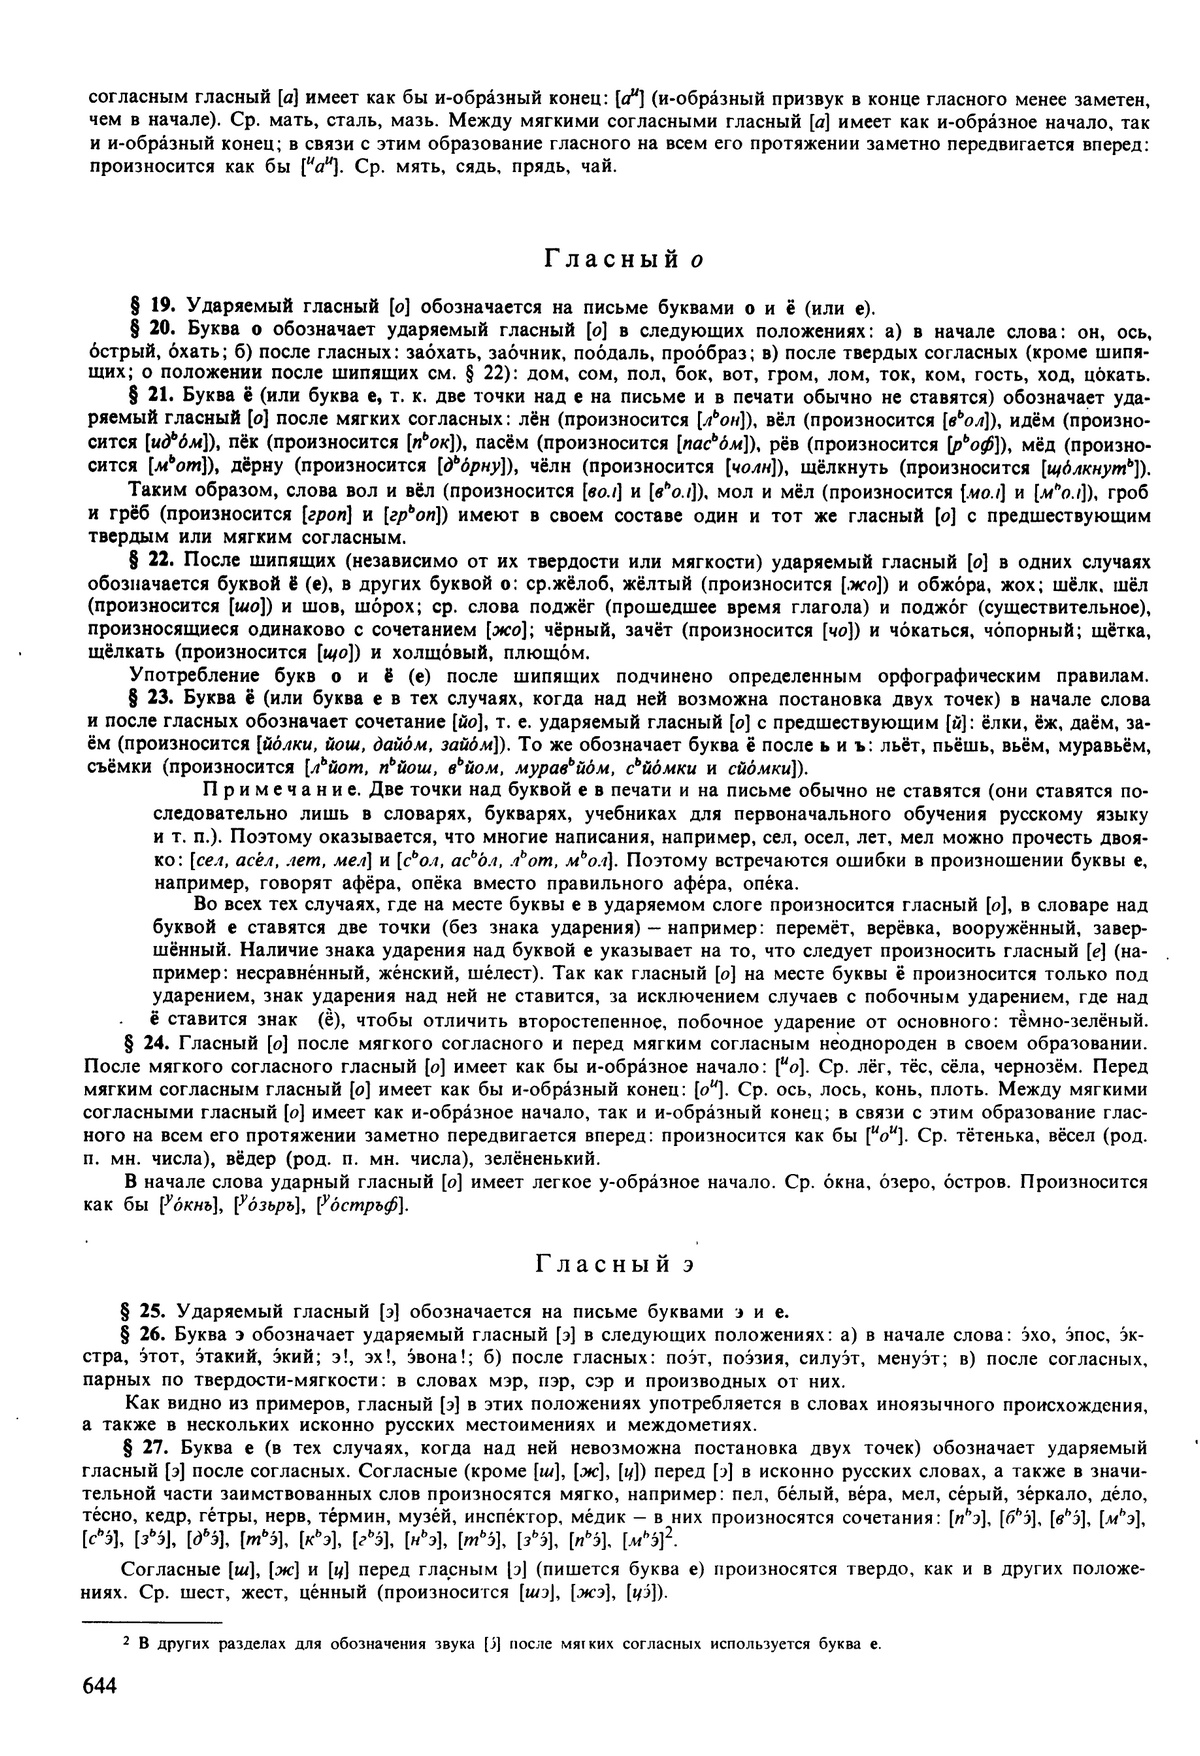 Фотокопия pdf / скан страницы 644 орфоэпического словаря под редакцией Аванесова (5 издание, 1989 год)